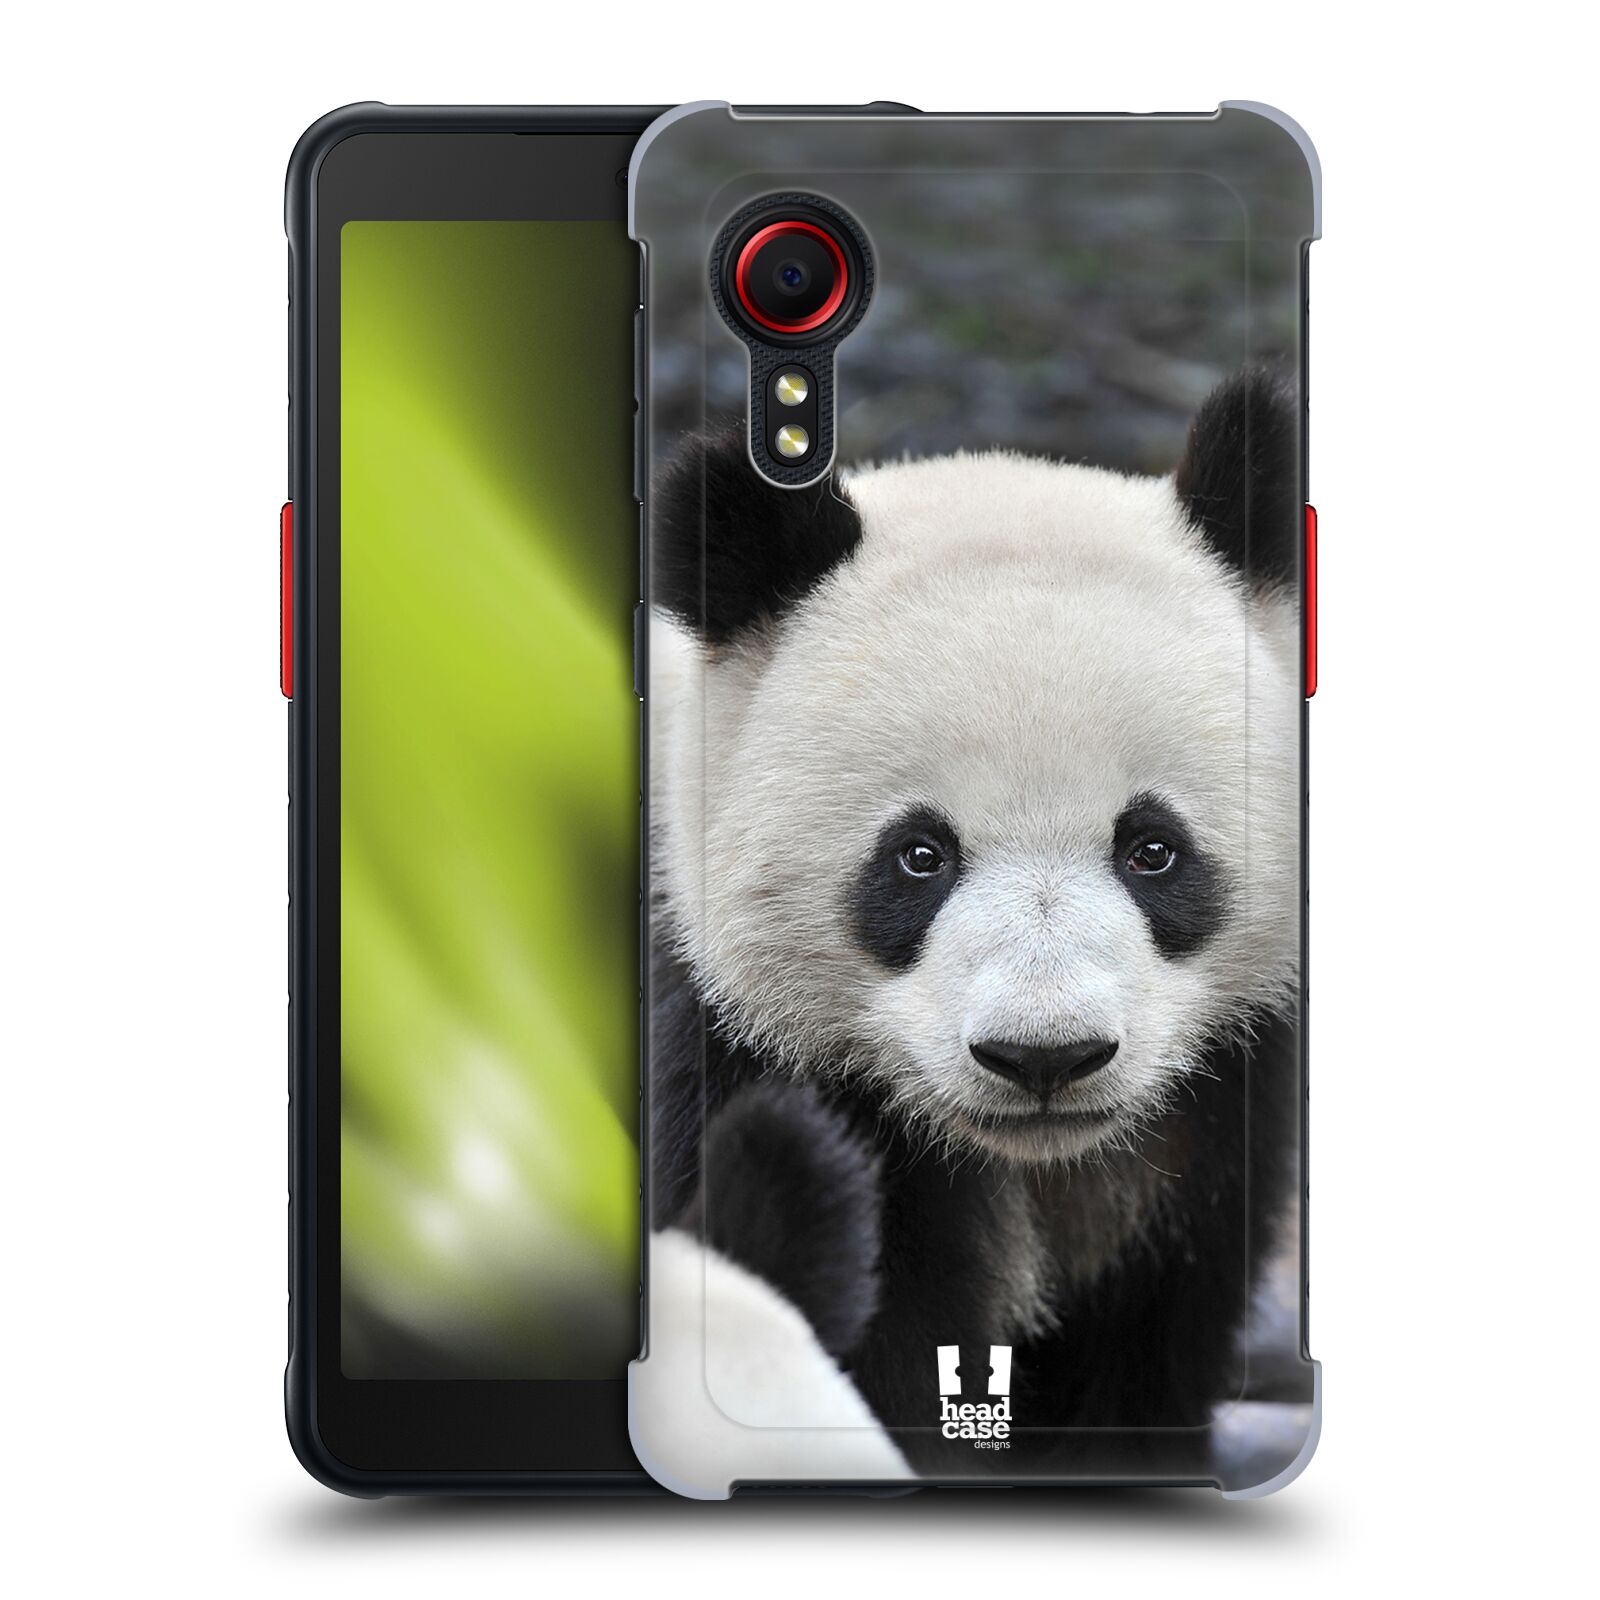 Zadní obal pro mobil Samsung Galaxy Xcover 5 - HEAD CASE - Svět zvířat medvěd panda